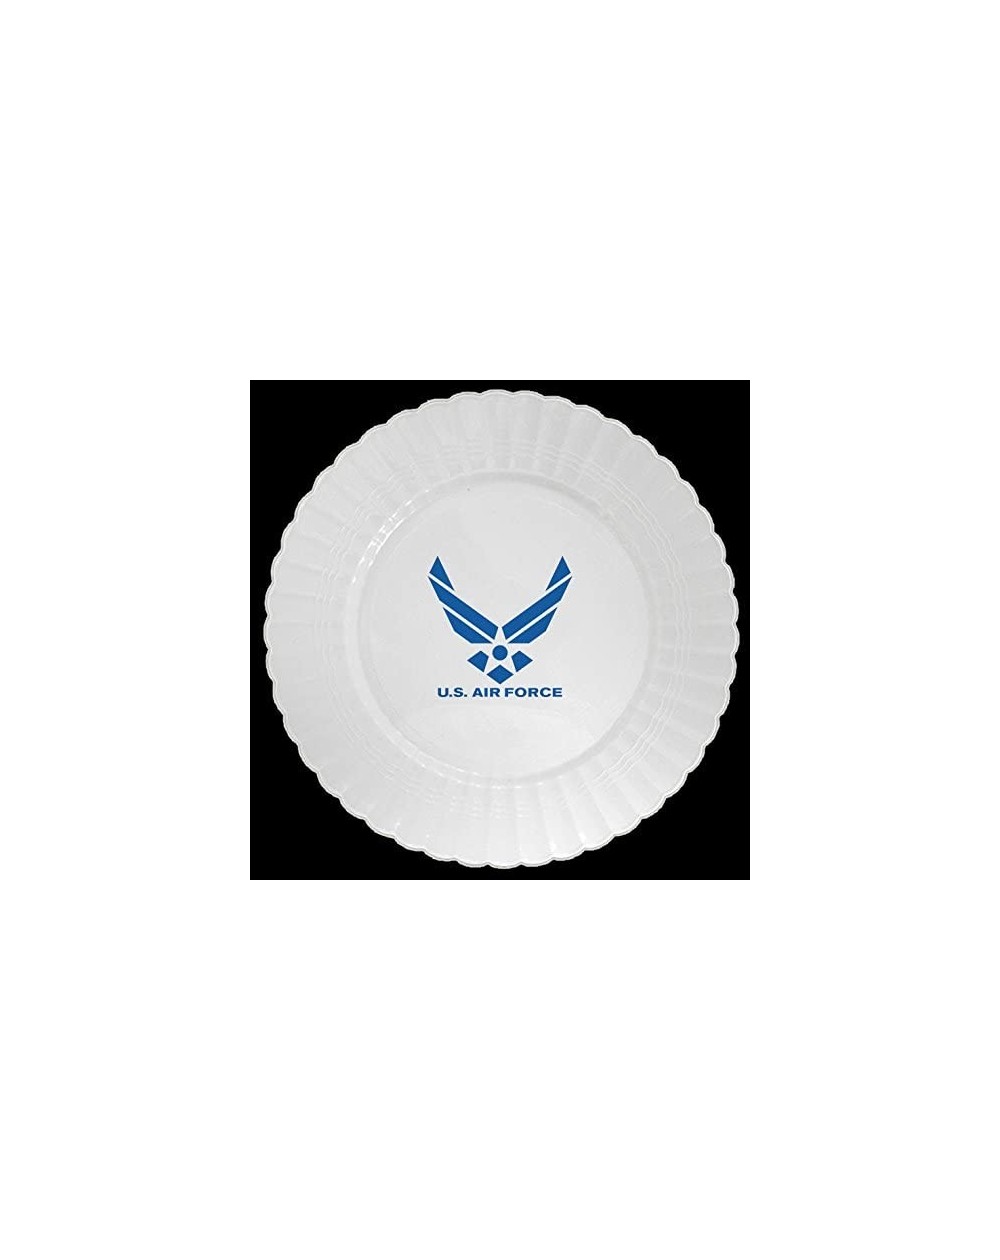 Centerpieces AIR Force Plastic Banquet Plate (8 CT.) - Plastic Banquet Plate - C411NEAJDS9 $15.00